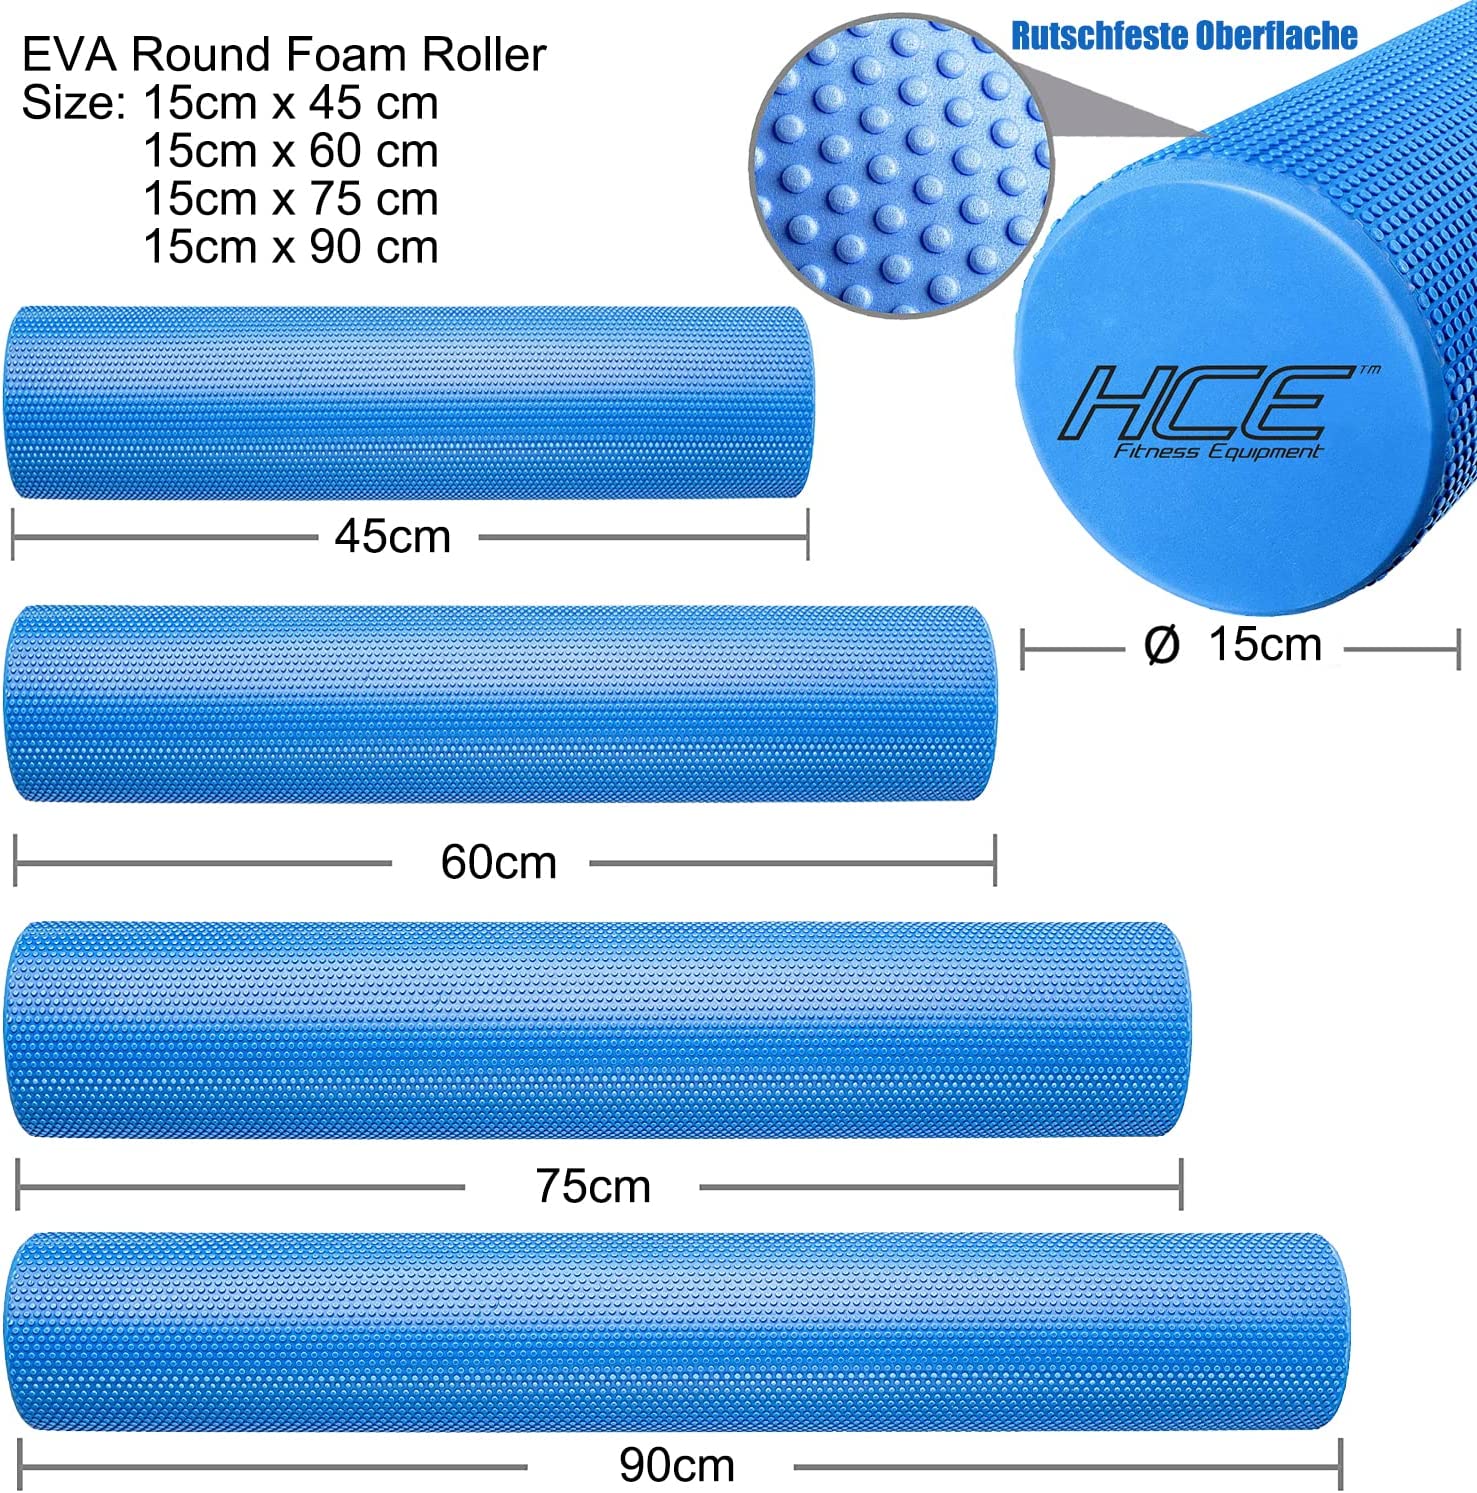 EVA Round Foam Roller 15cm x 90cm